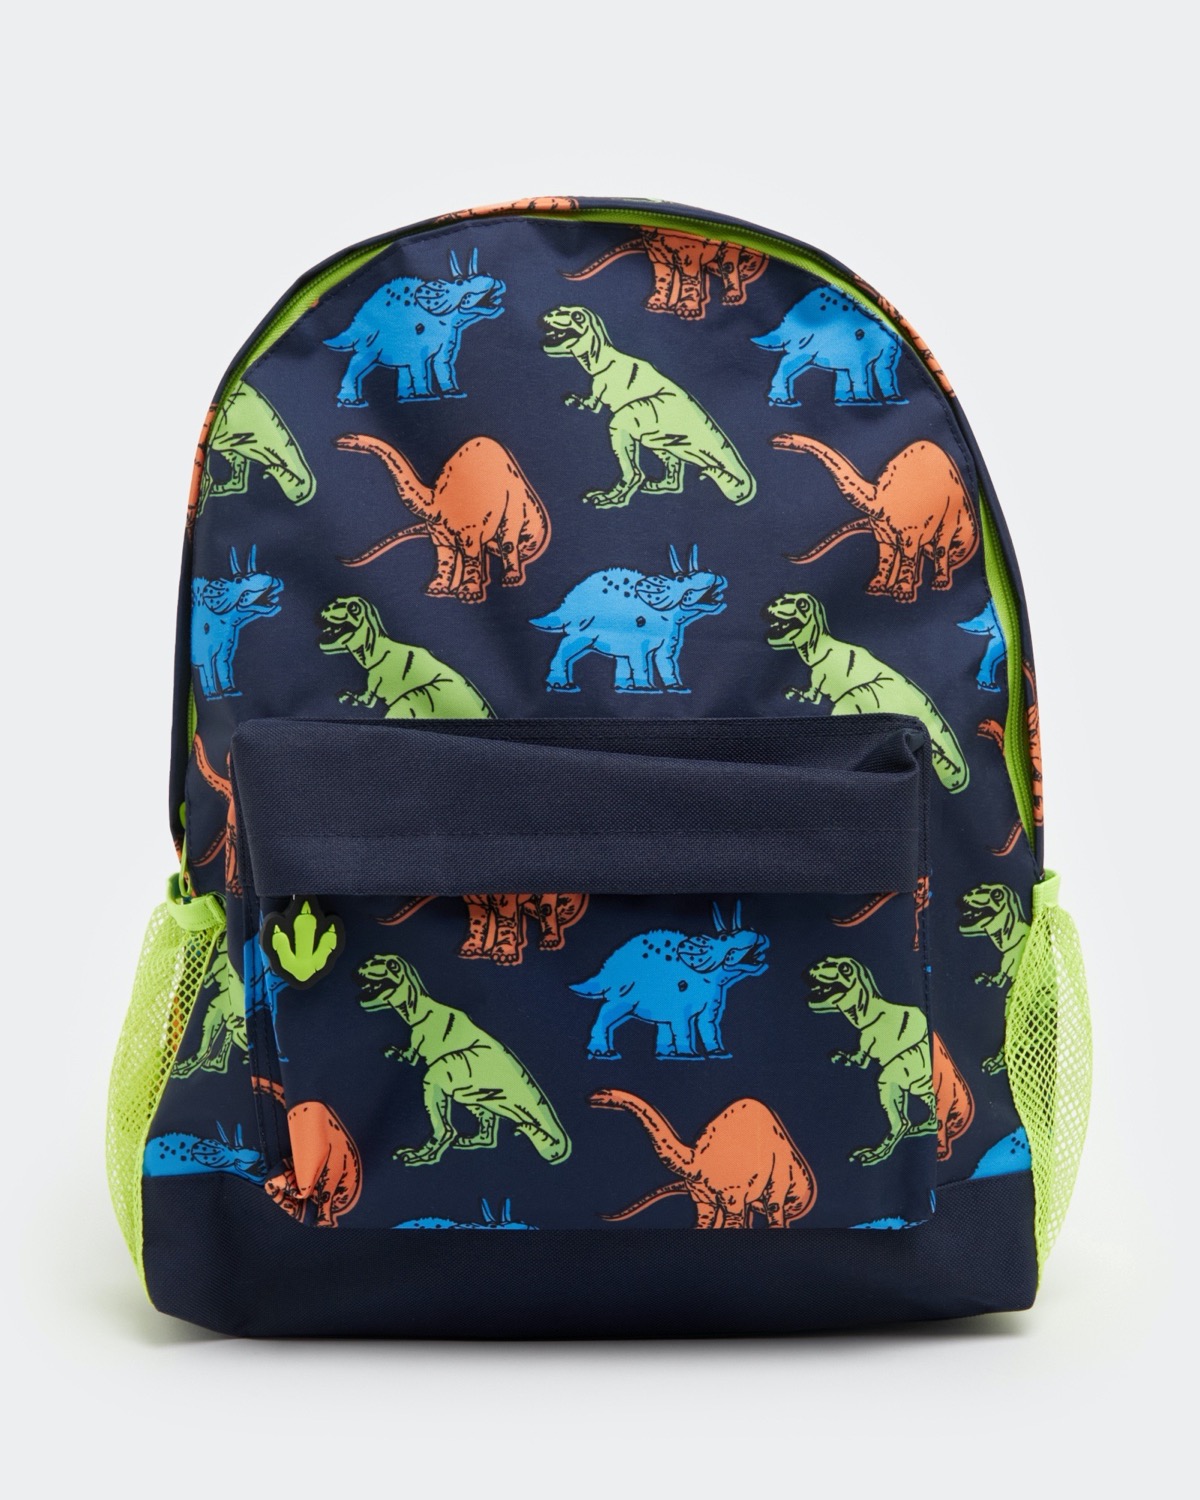 Dinosaur Rucksack, Dinosaur Backpack, Children's Rucksack, Kids Backpack,  Rucksack Gift, Backpack Gift, Dino Backpack 